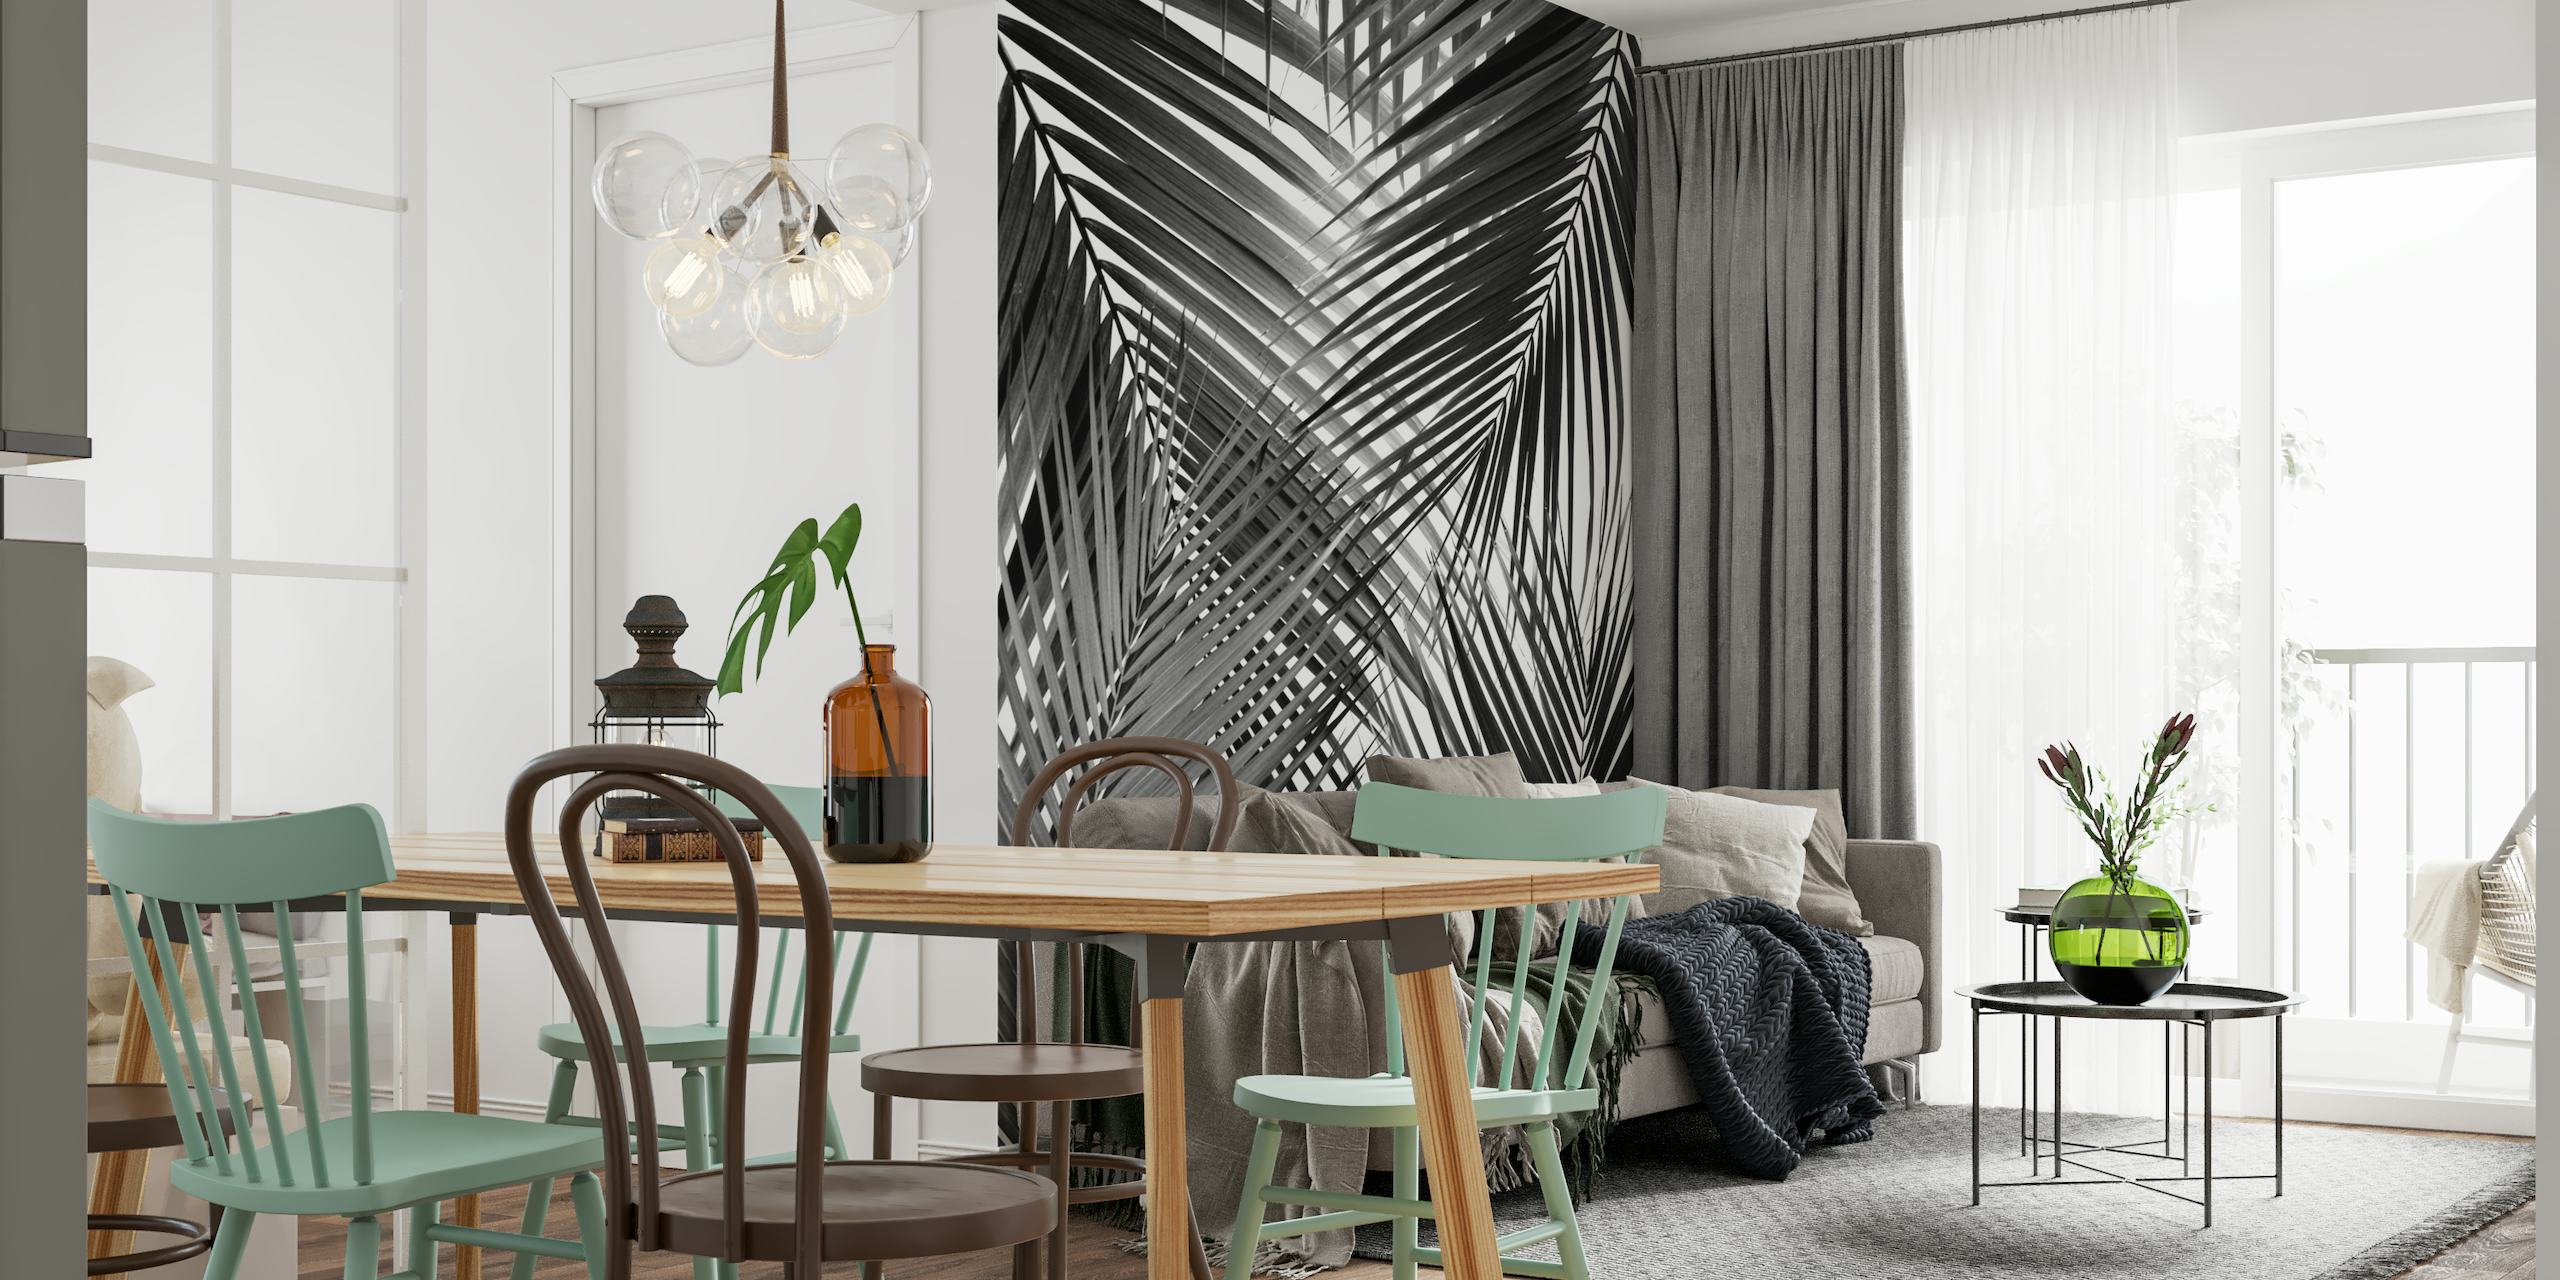 Svart og hvitt veggmaleri av abstrakt palmebladdesign